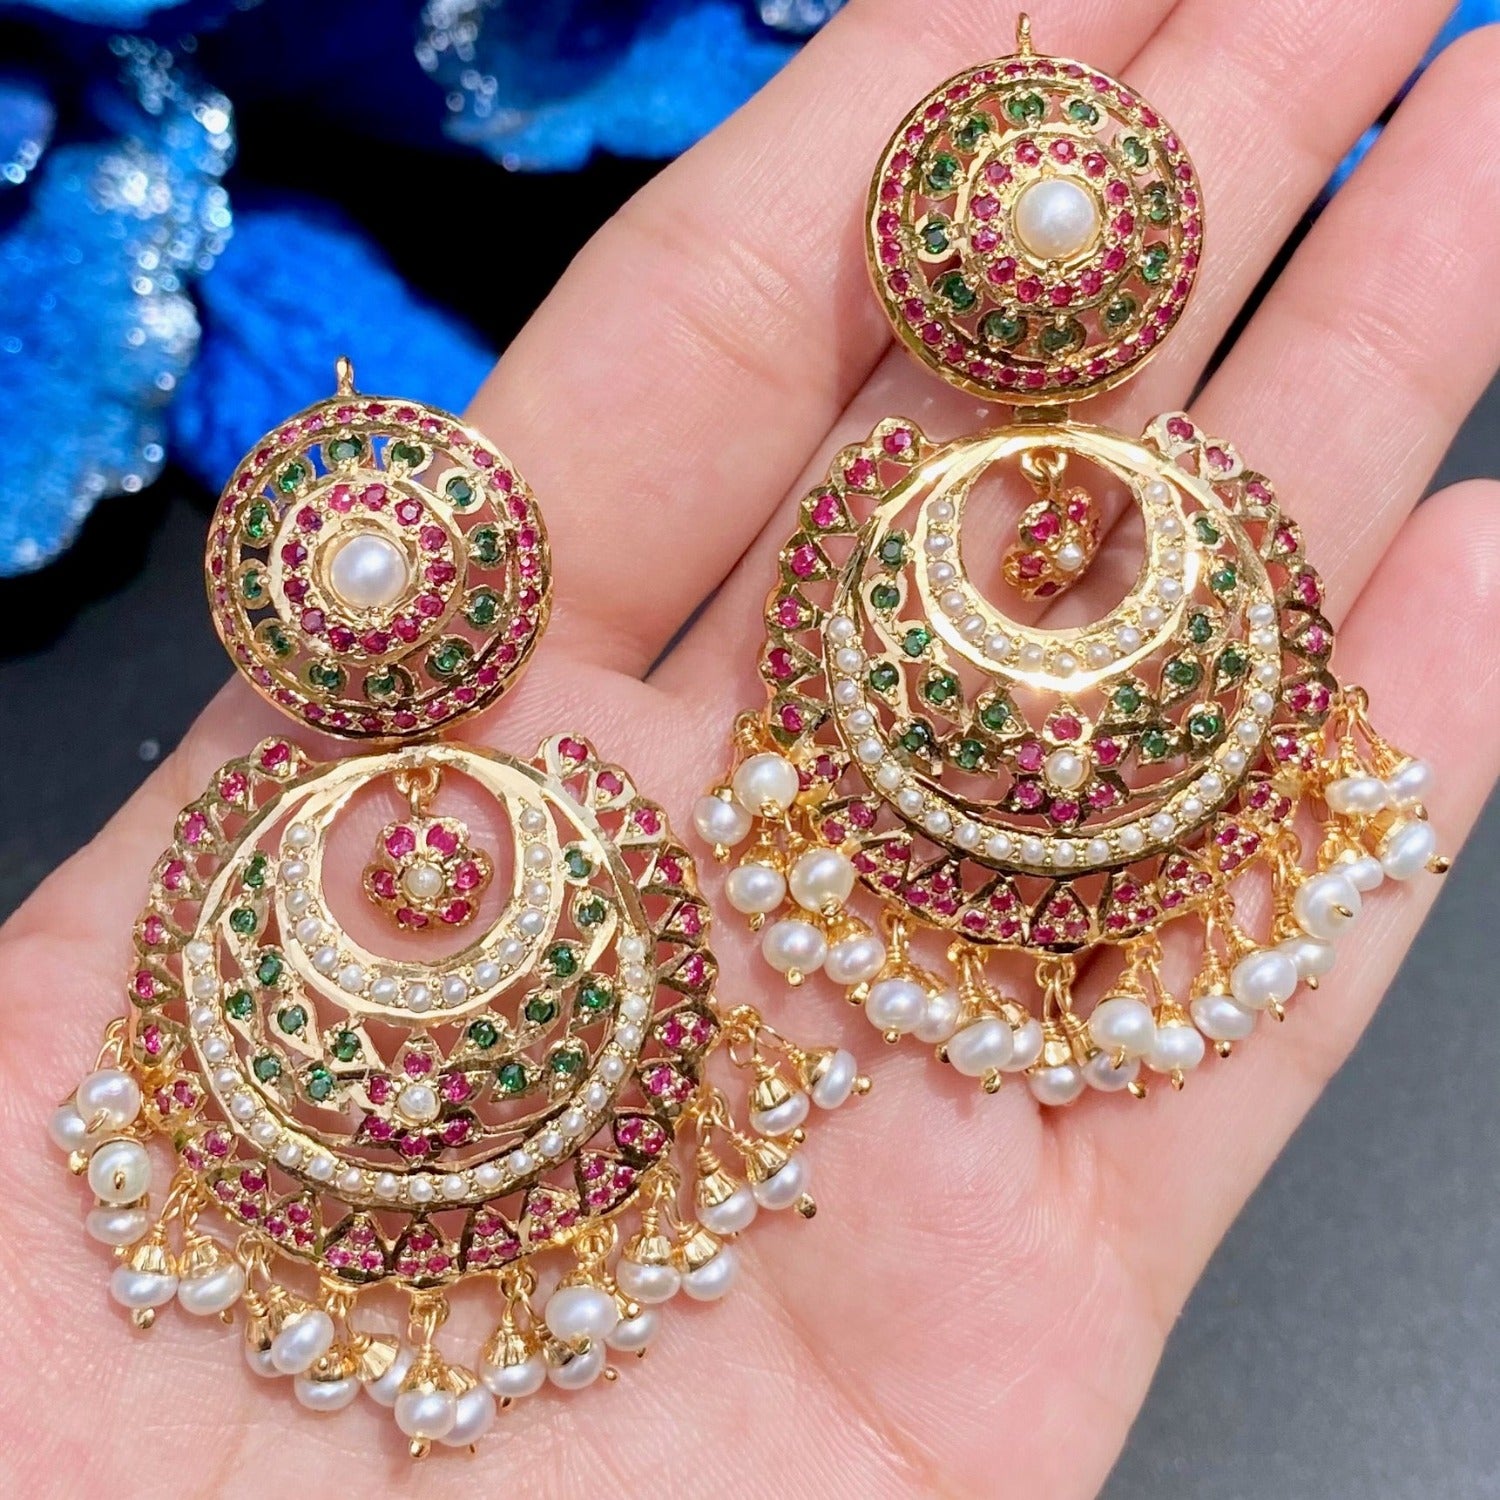 chandbali earrings in gold